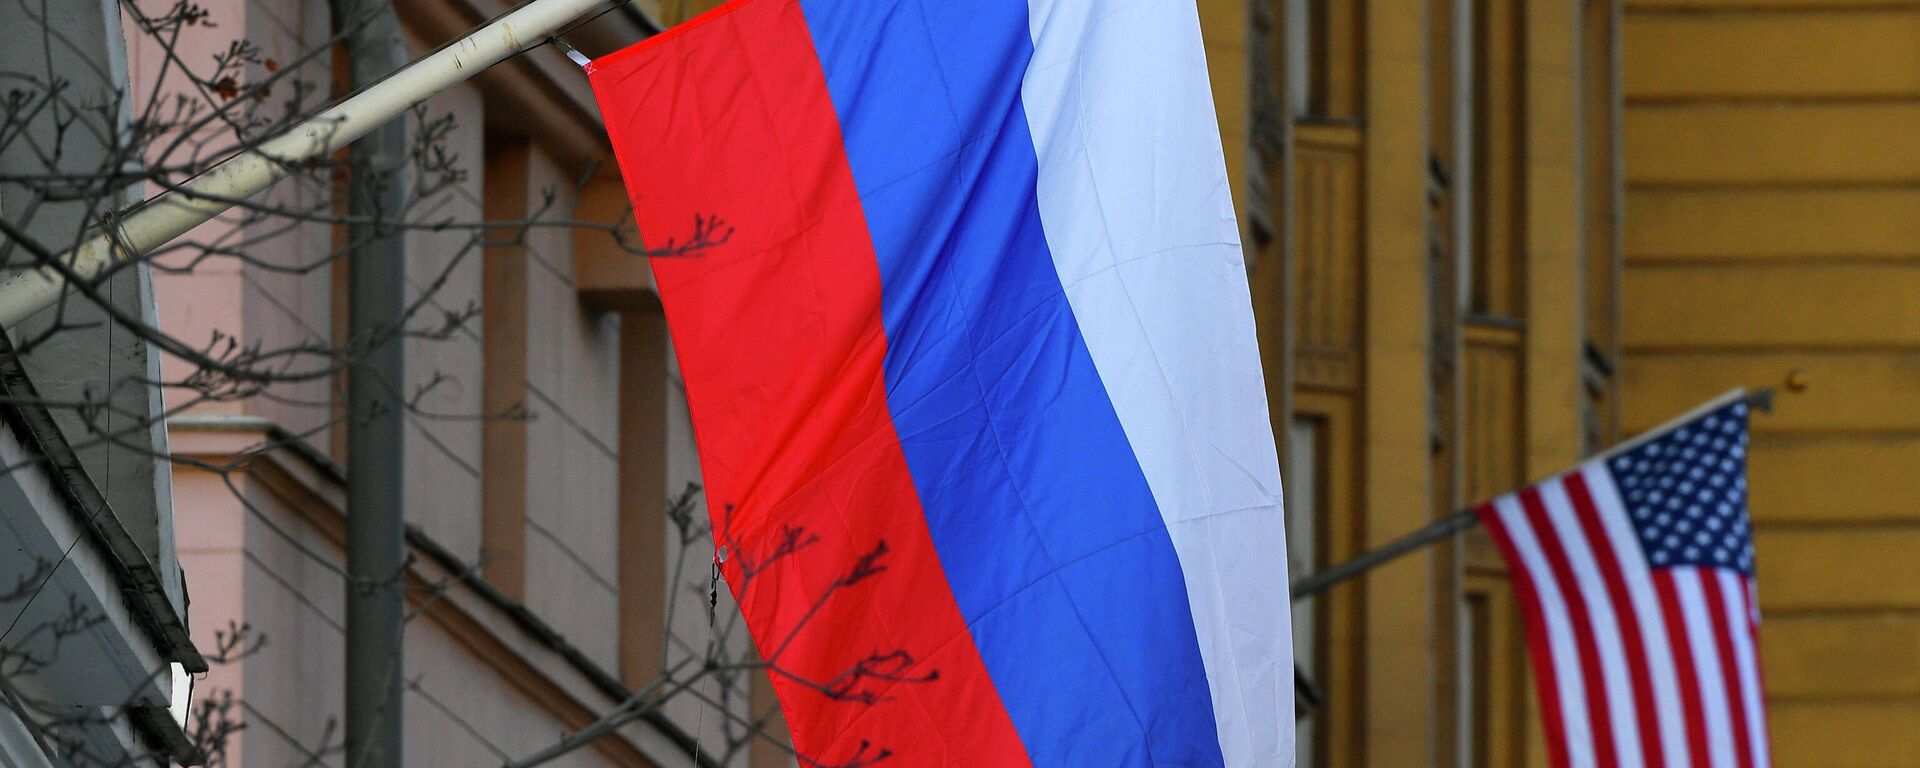 Banderas de Rusia y EEUU en la Embajada estadounidense en Moscú - Sputnik Mundo, 1920, 17.11.2021